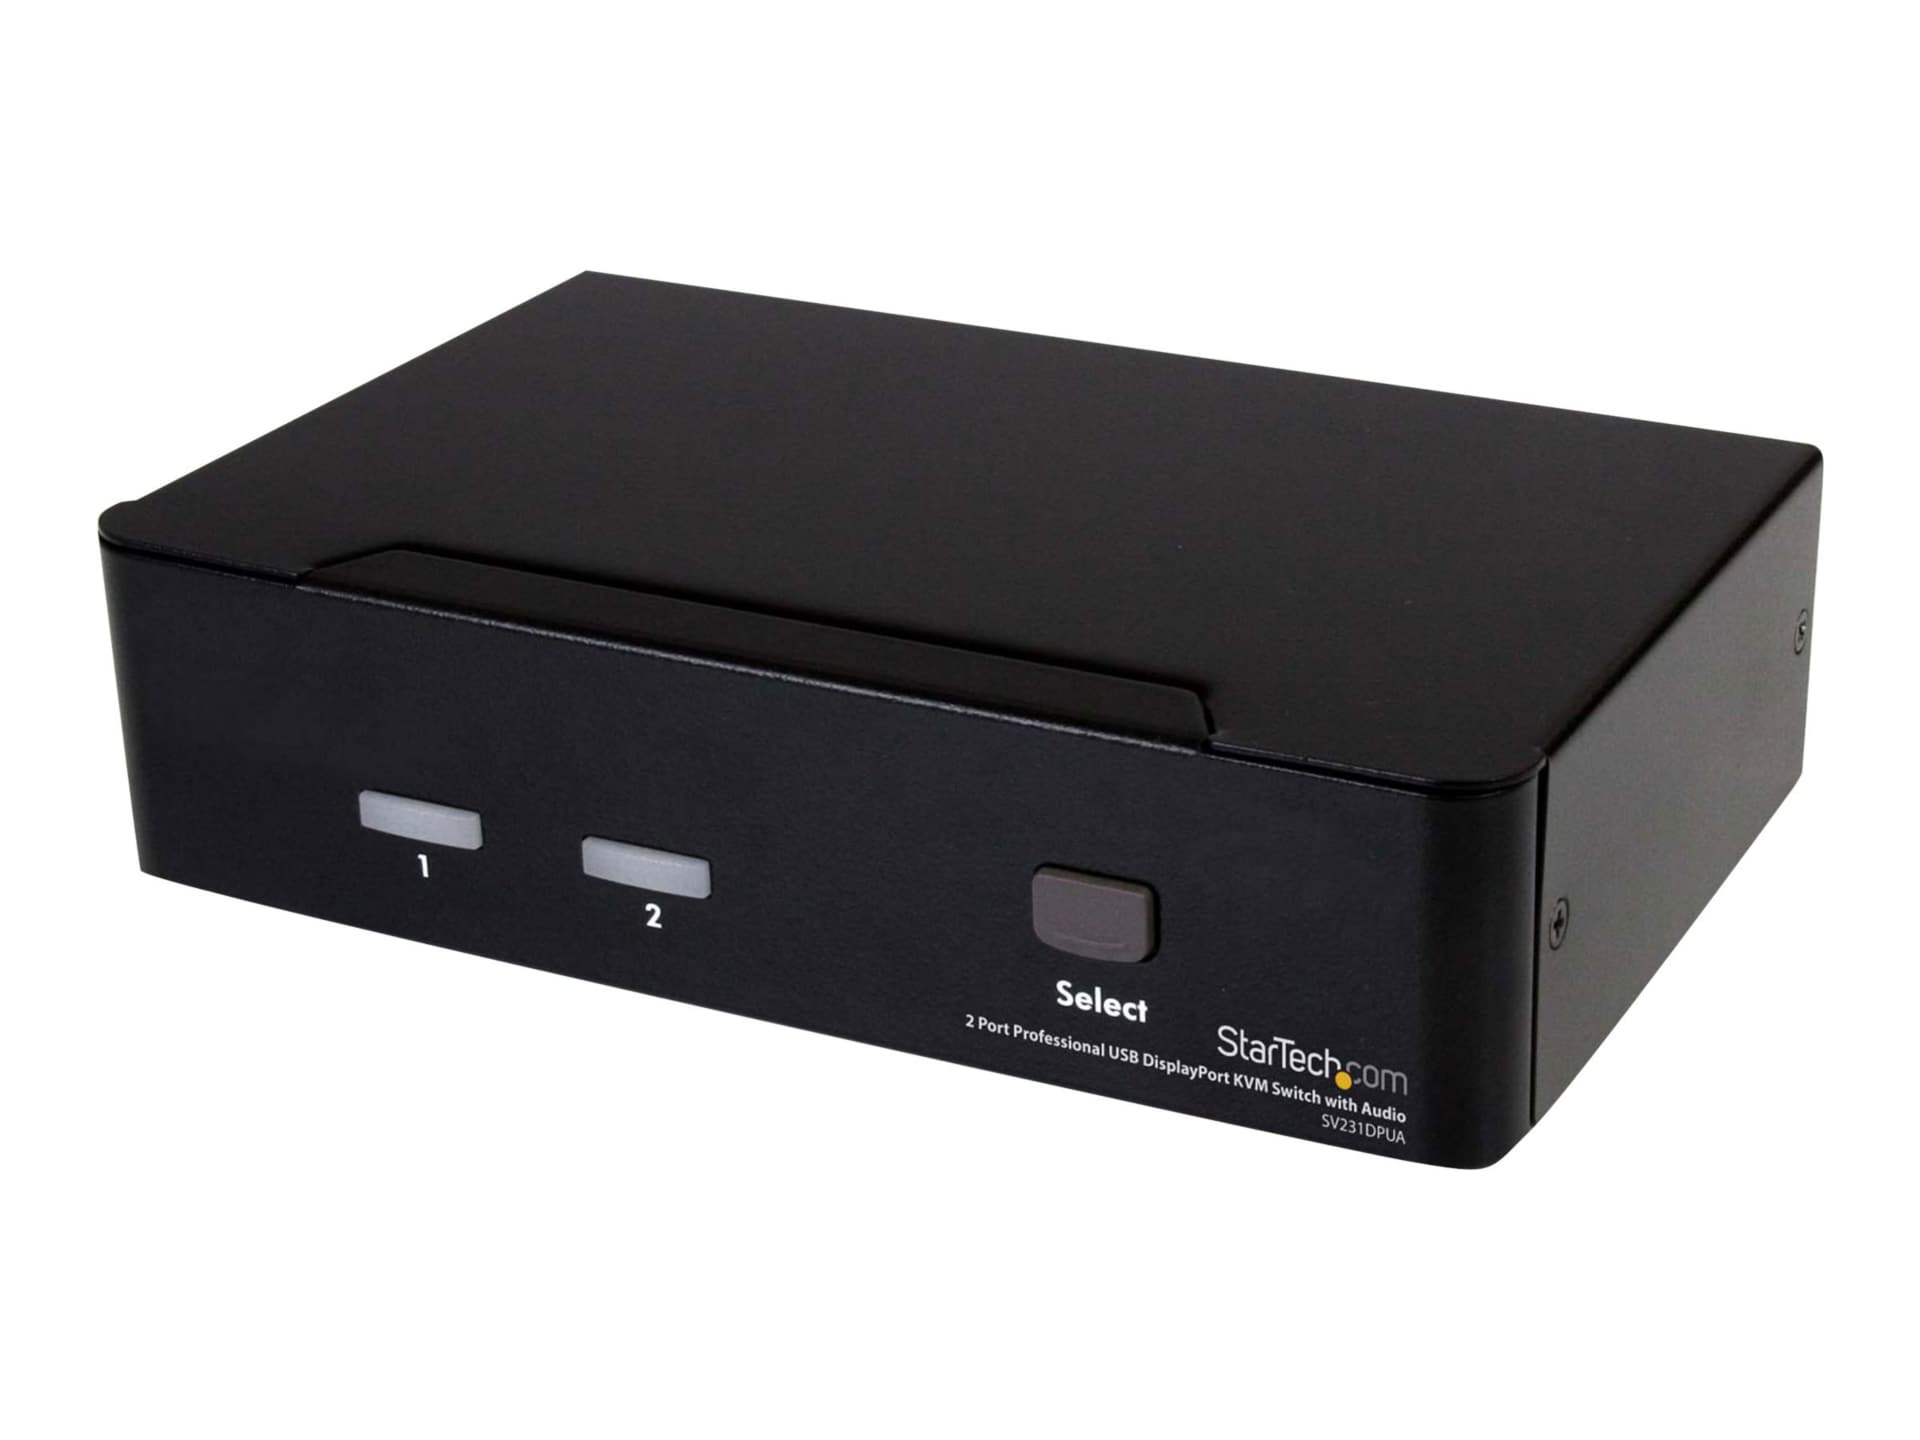 Commutateur USB DisplayPort KVM 2 port(s) avec audio de StarTech.com